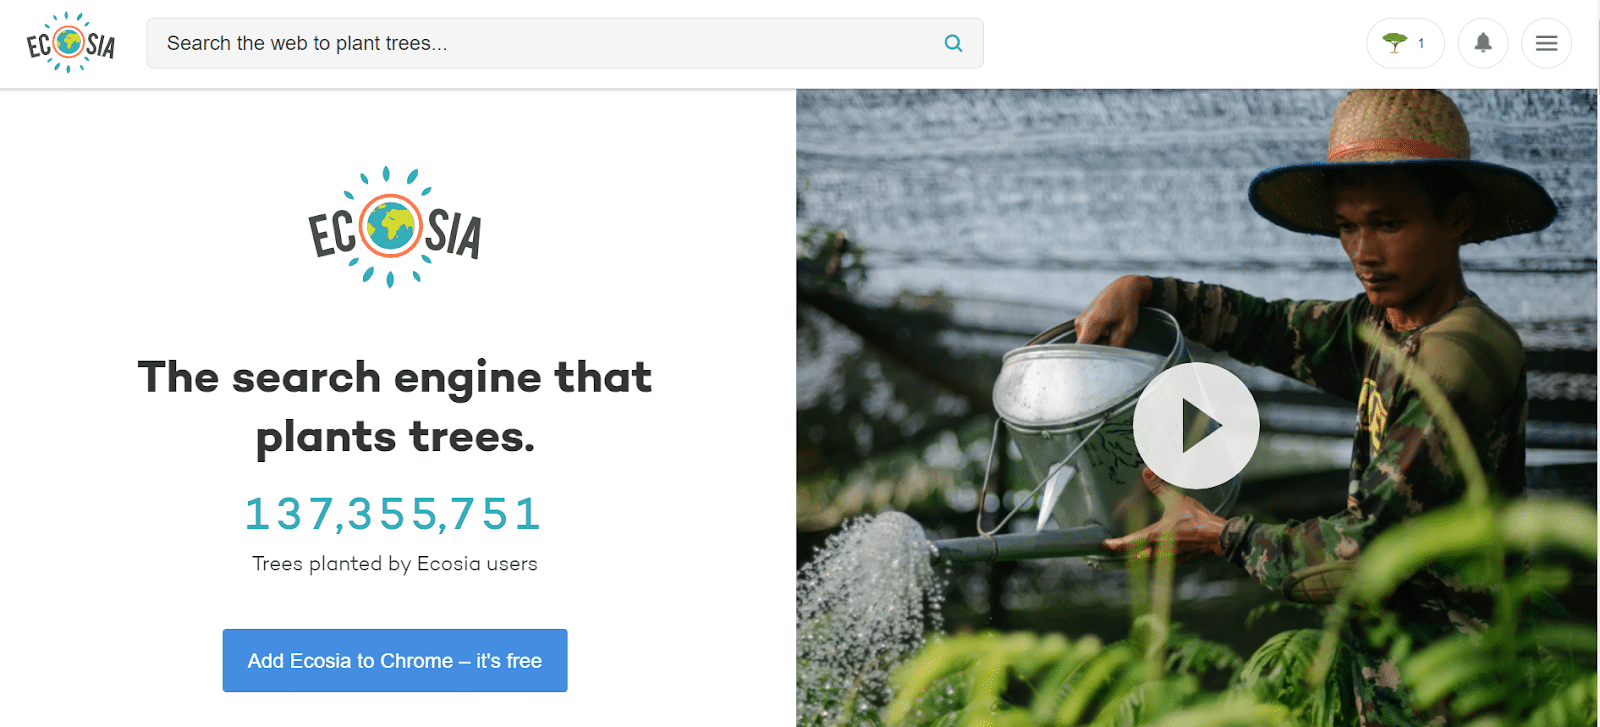 Ecosia, the eco-friendly search engine